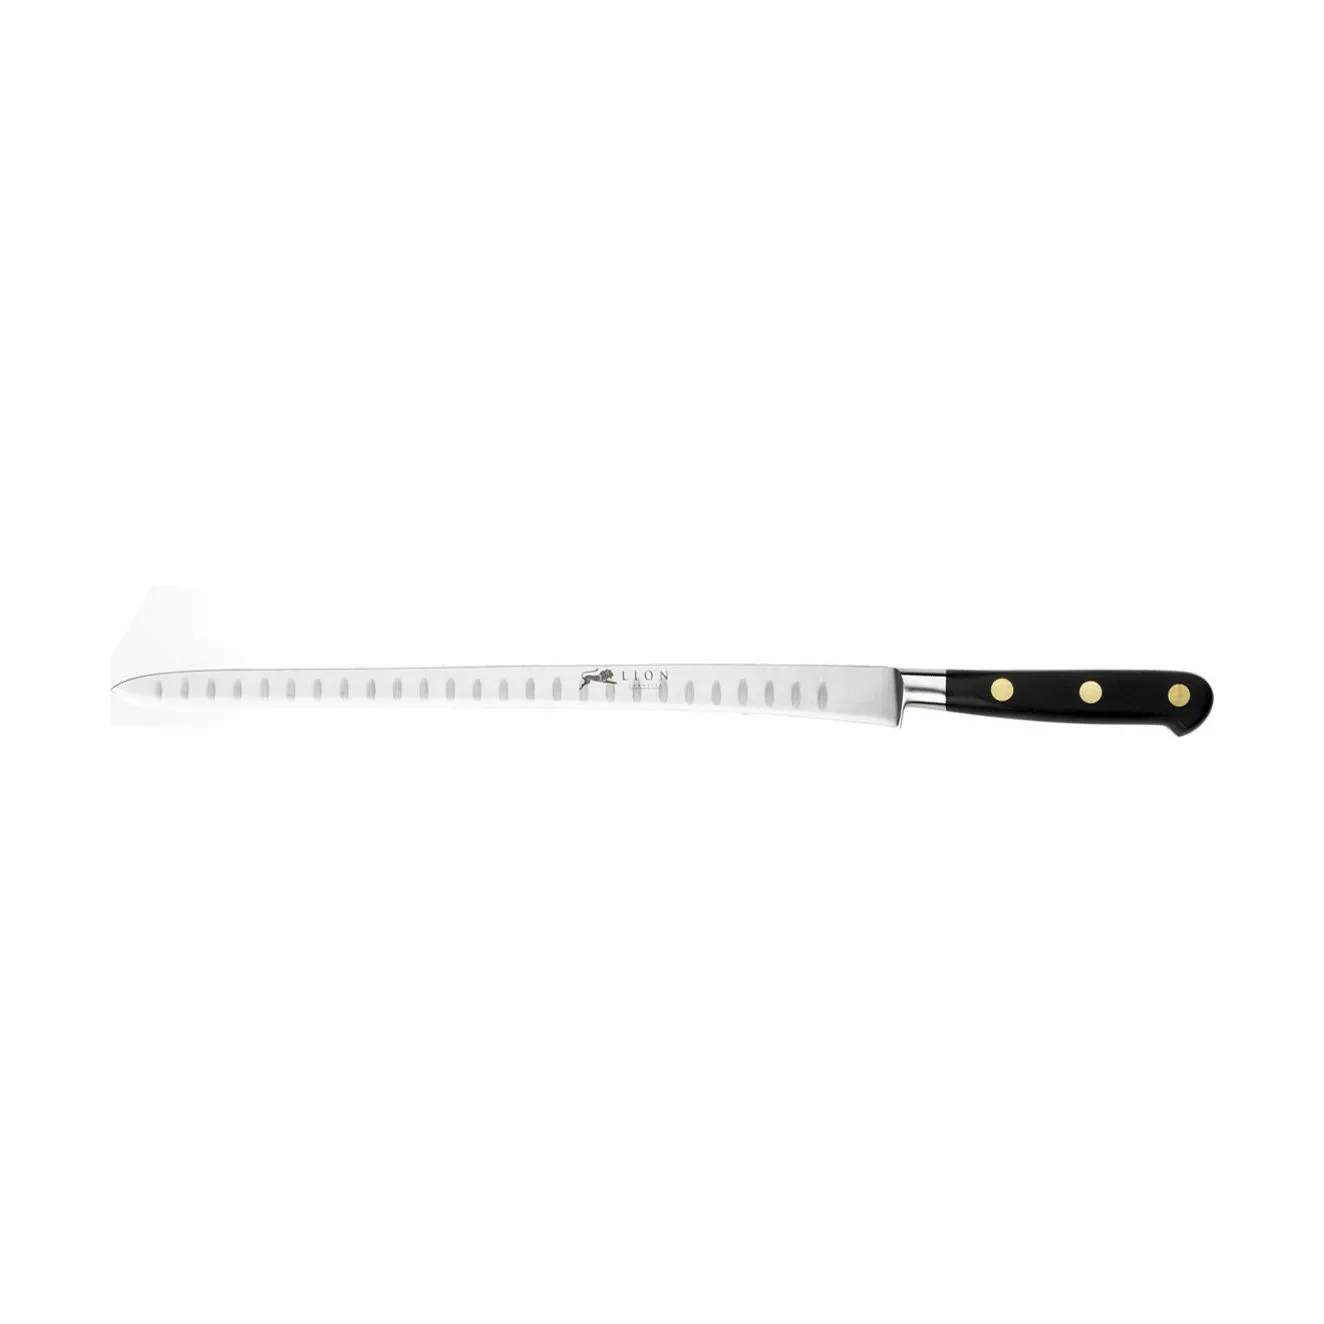 Lion Sabatier filetknive Ideal Laksekniv m. luftskær